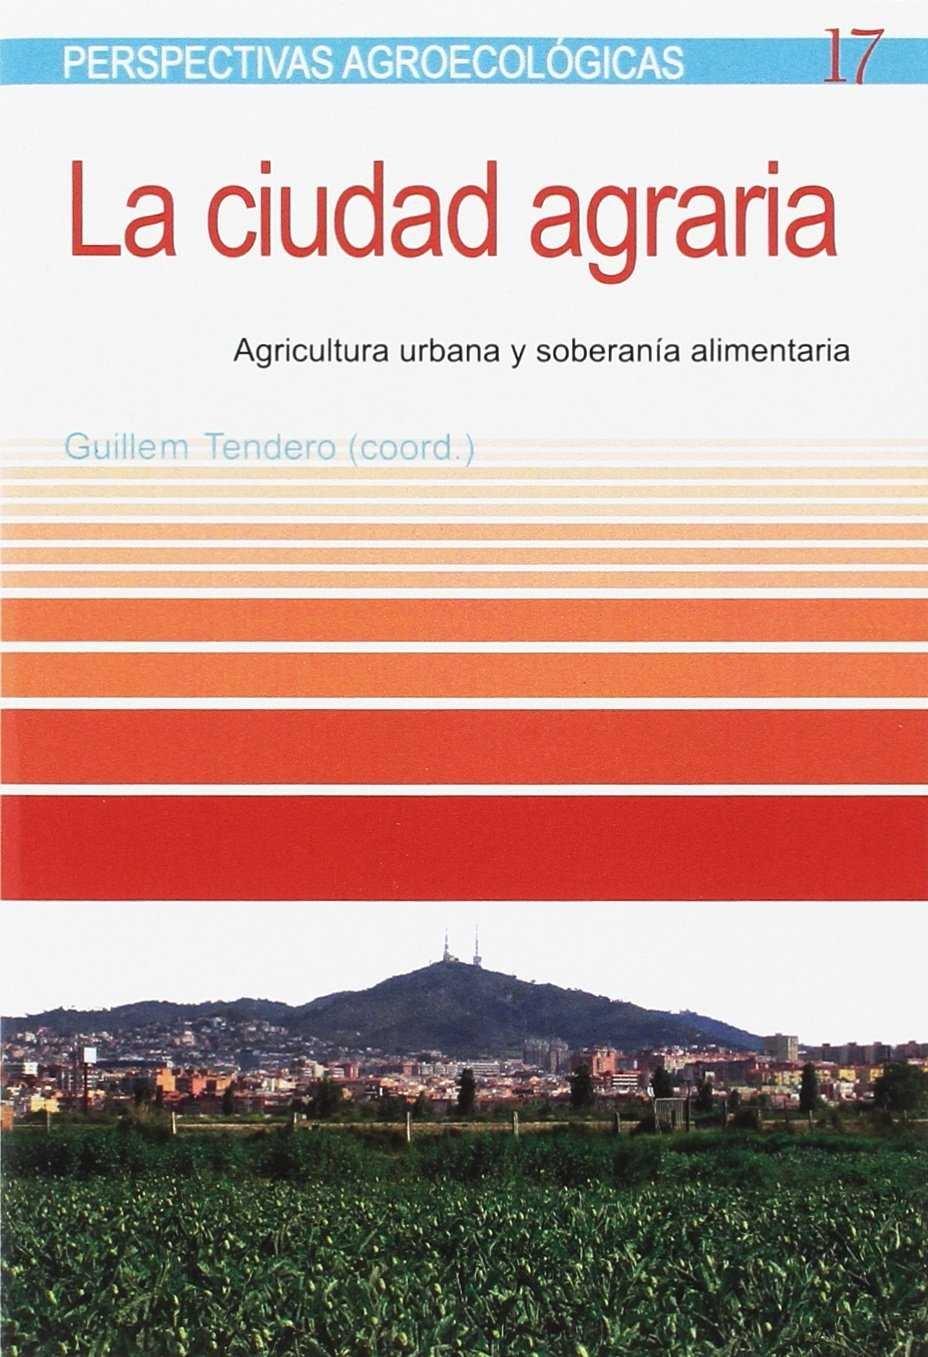 CIUDAD AGRARIA, LA "AGRICULTURA URBANA Y SOBERANÍA ALIMENTARIA "